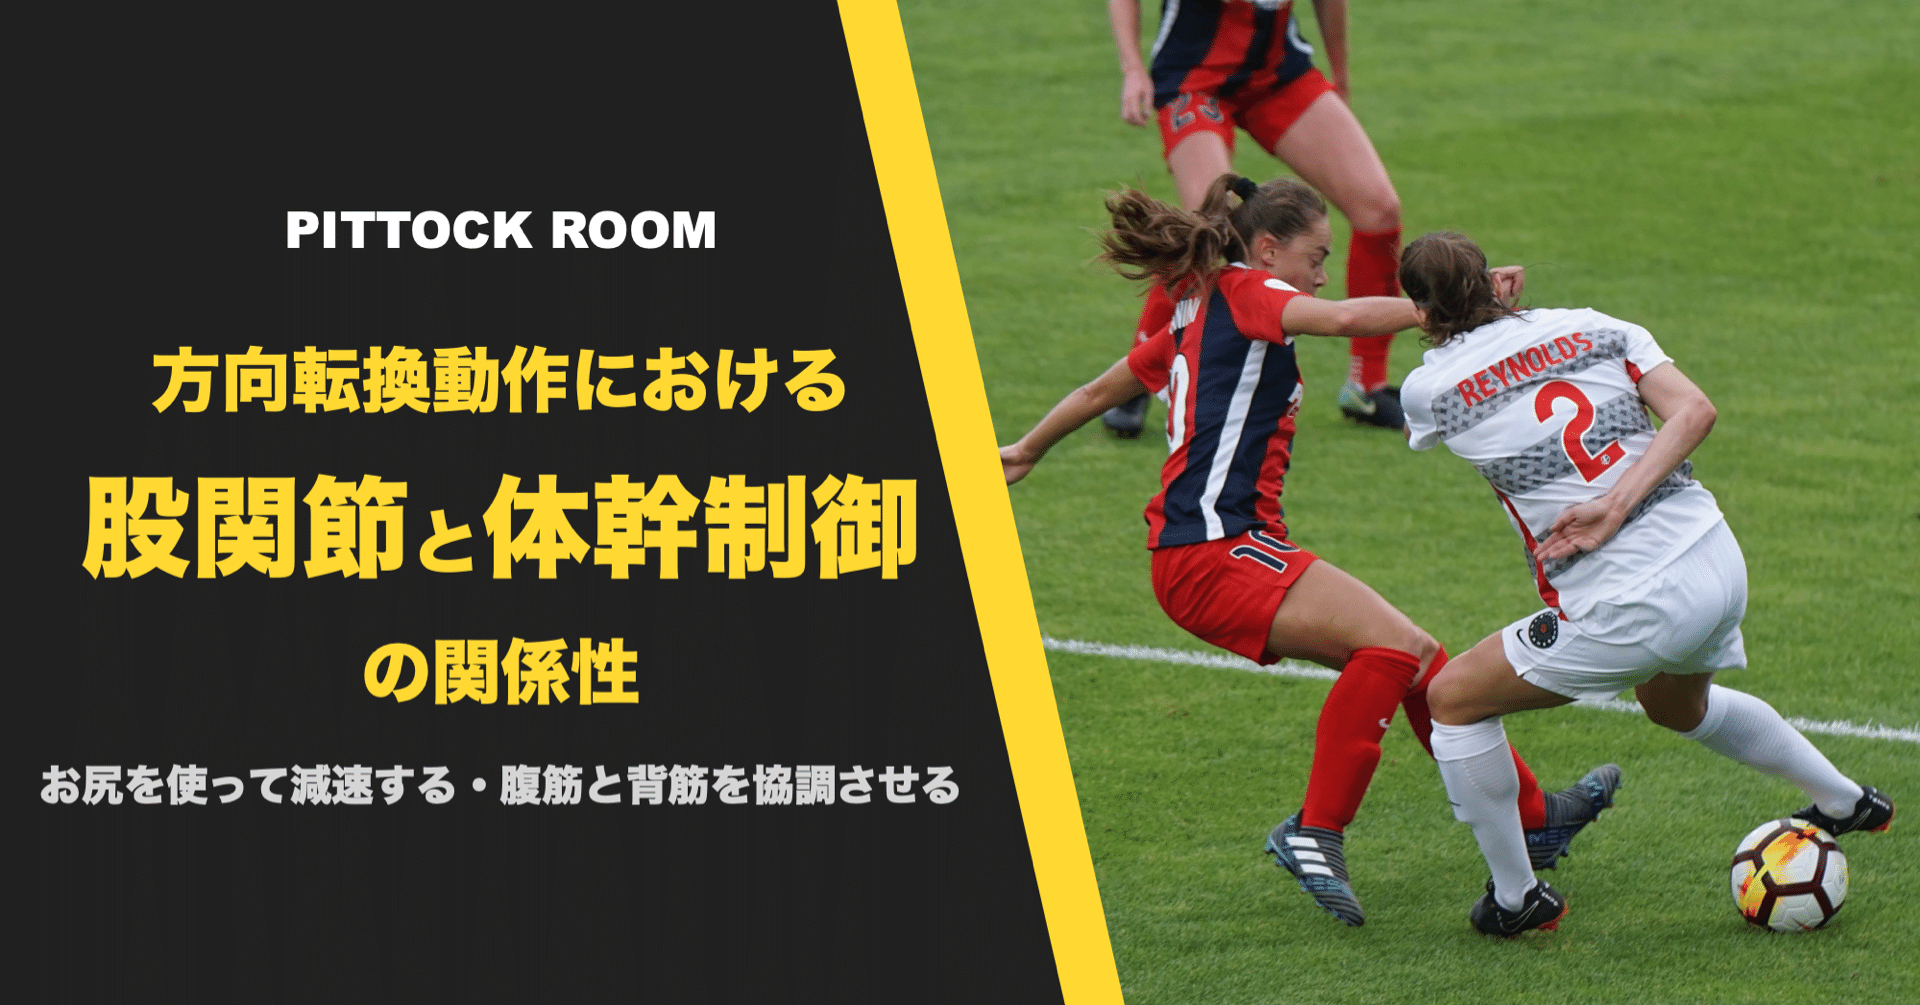 サッカー選手の方向転換動作における股関節と体幹制御の関係性 Keisuke Matsumoto フィジカルコーチ Note